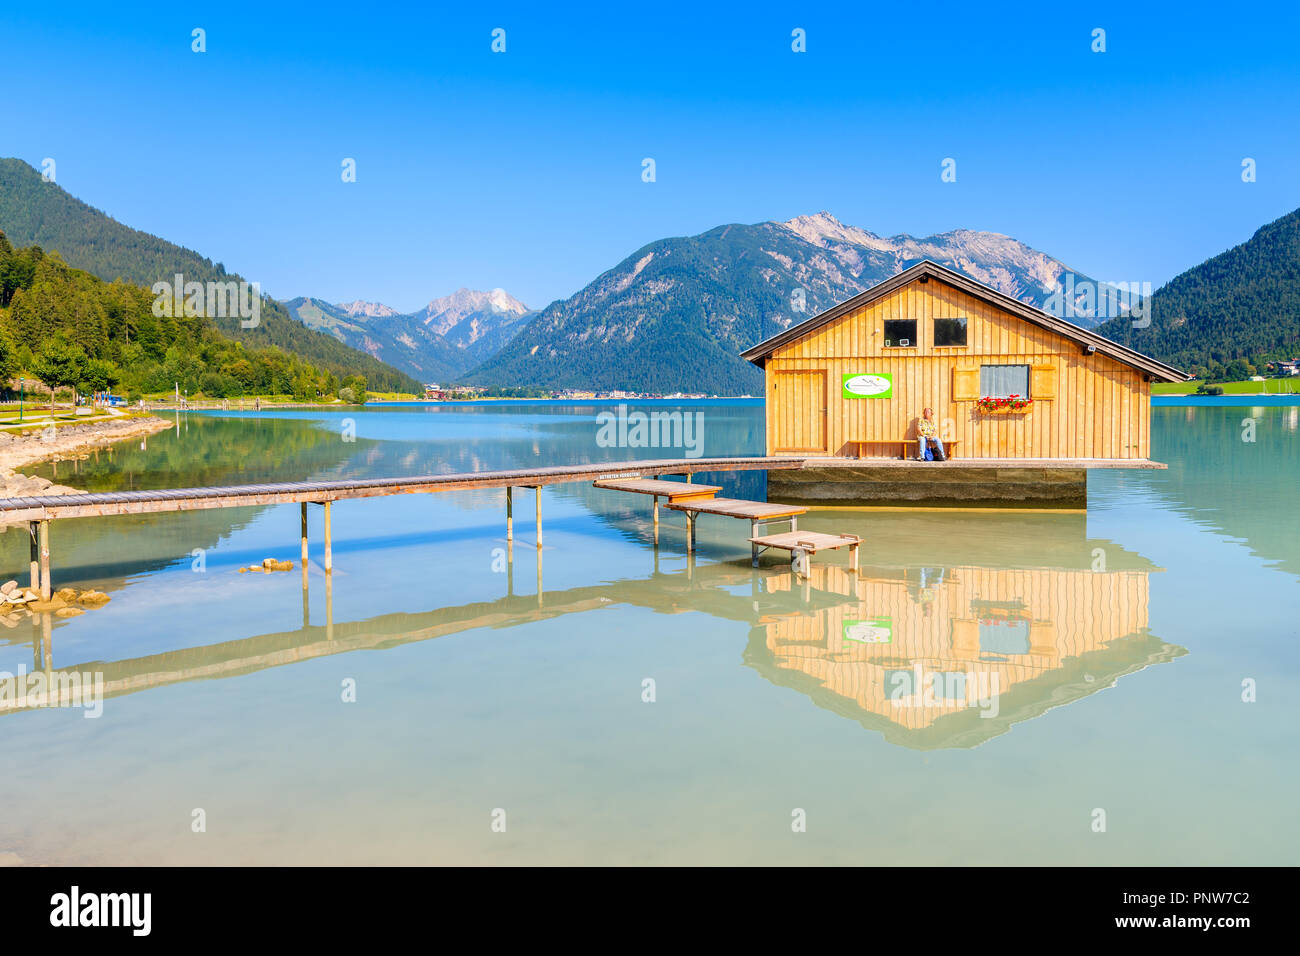 ACHENSEE, Österreich - 31.JULI 2018: Holz- Boot Haus und Pier der Ufer des wunderschönen Achensee an sonnigen Sommertag. Achensee, auch genannt Stockfoto